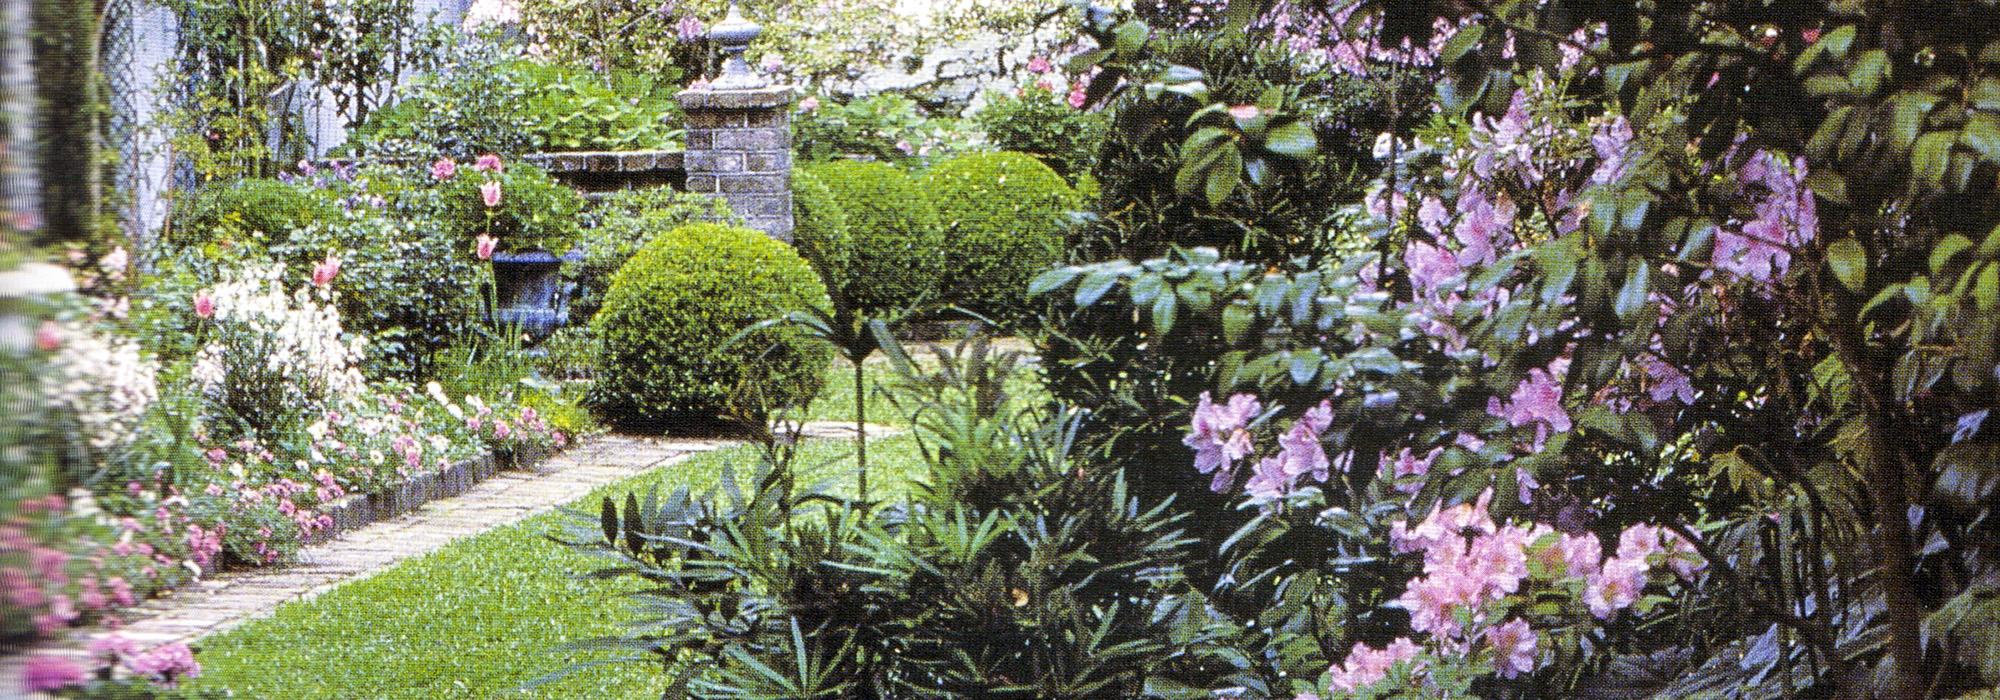 Emily Whaley's Garden